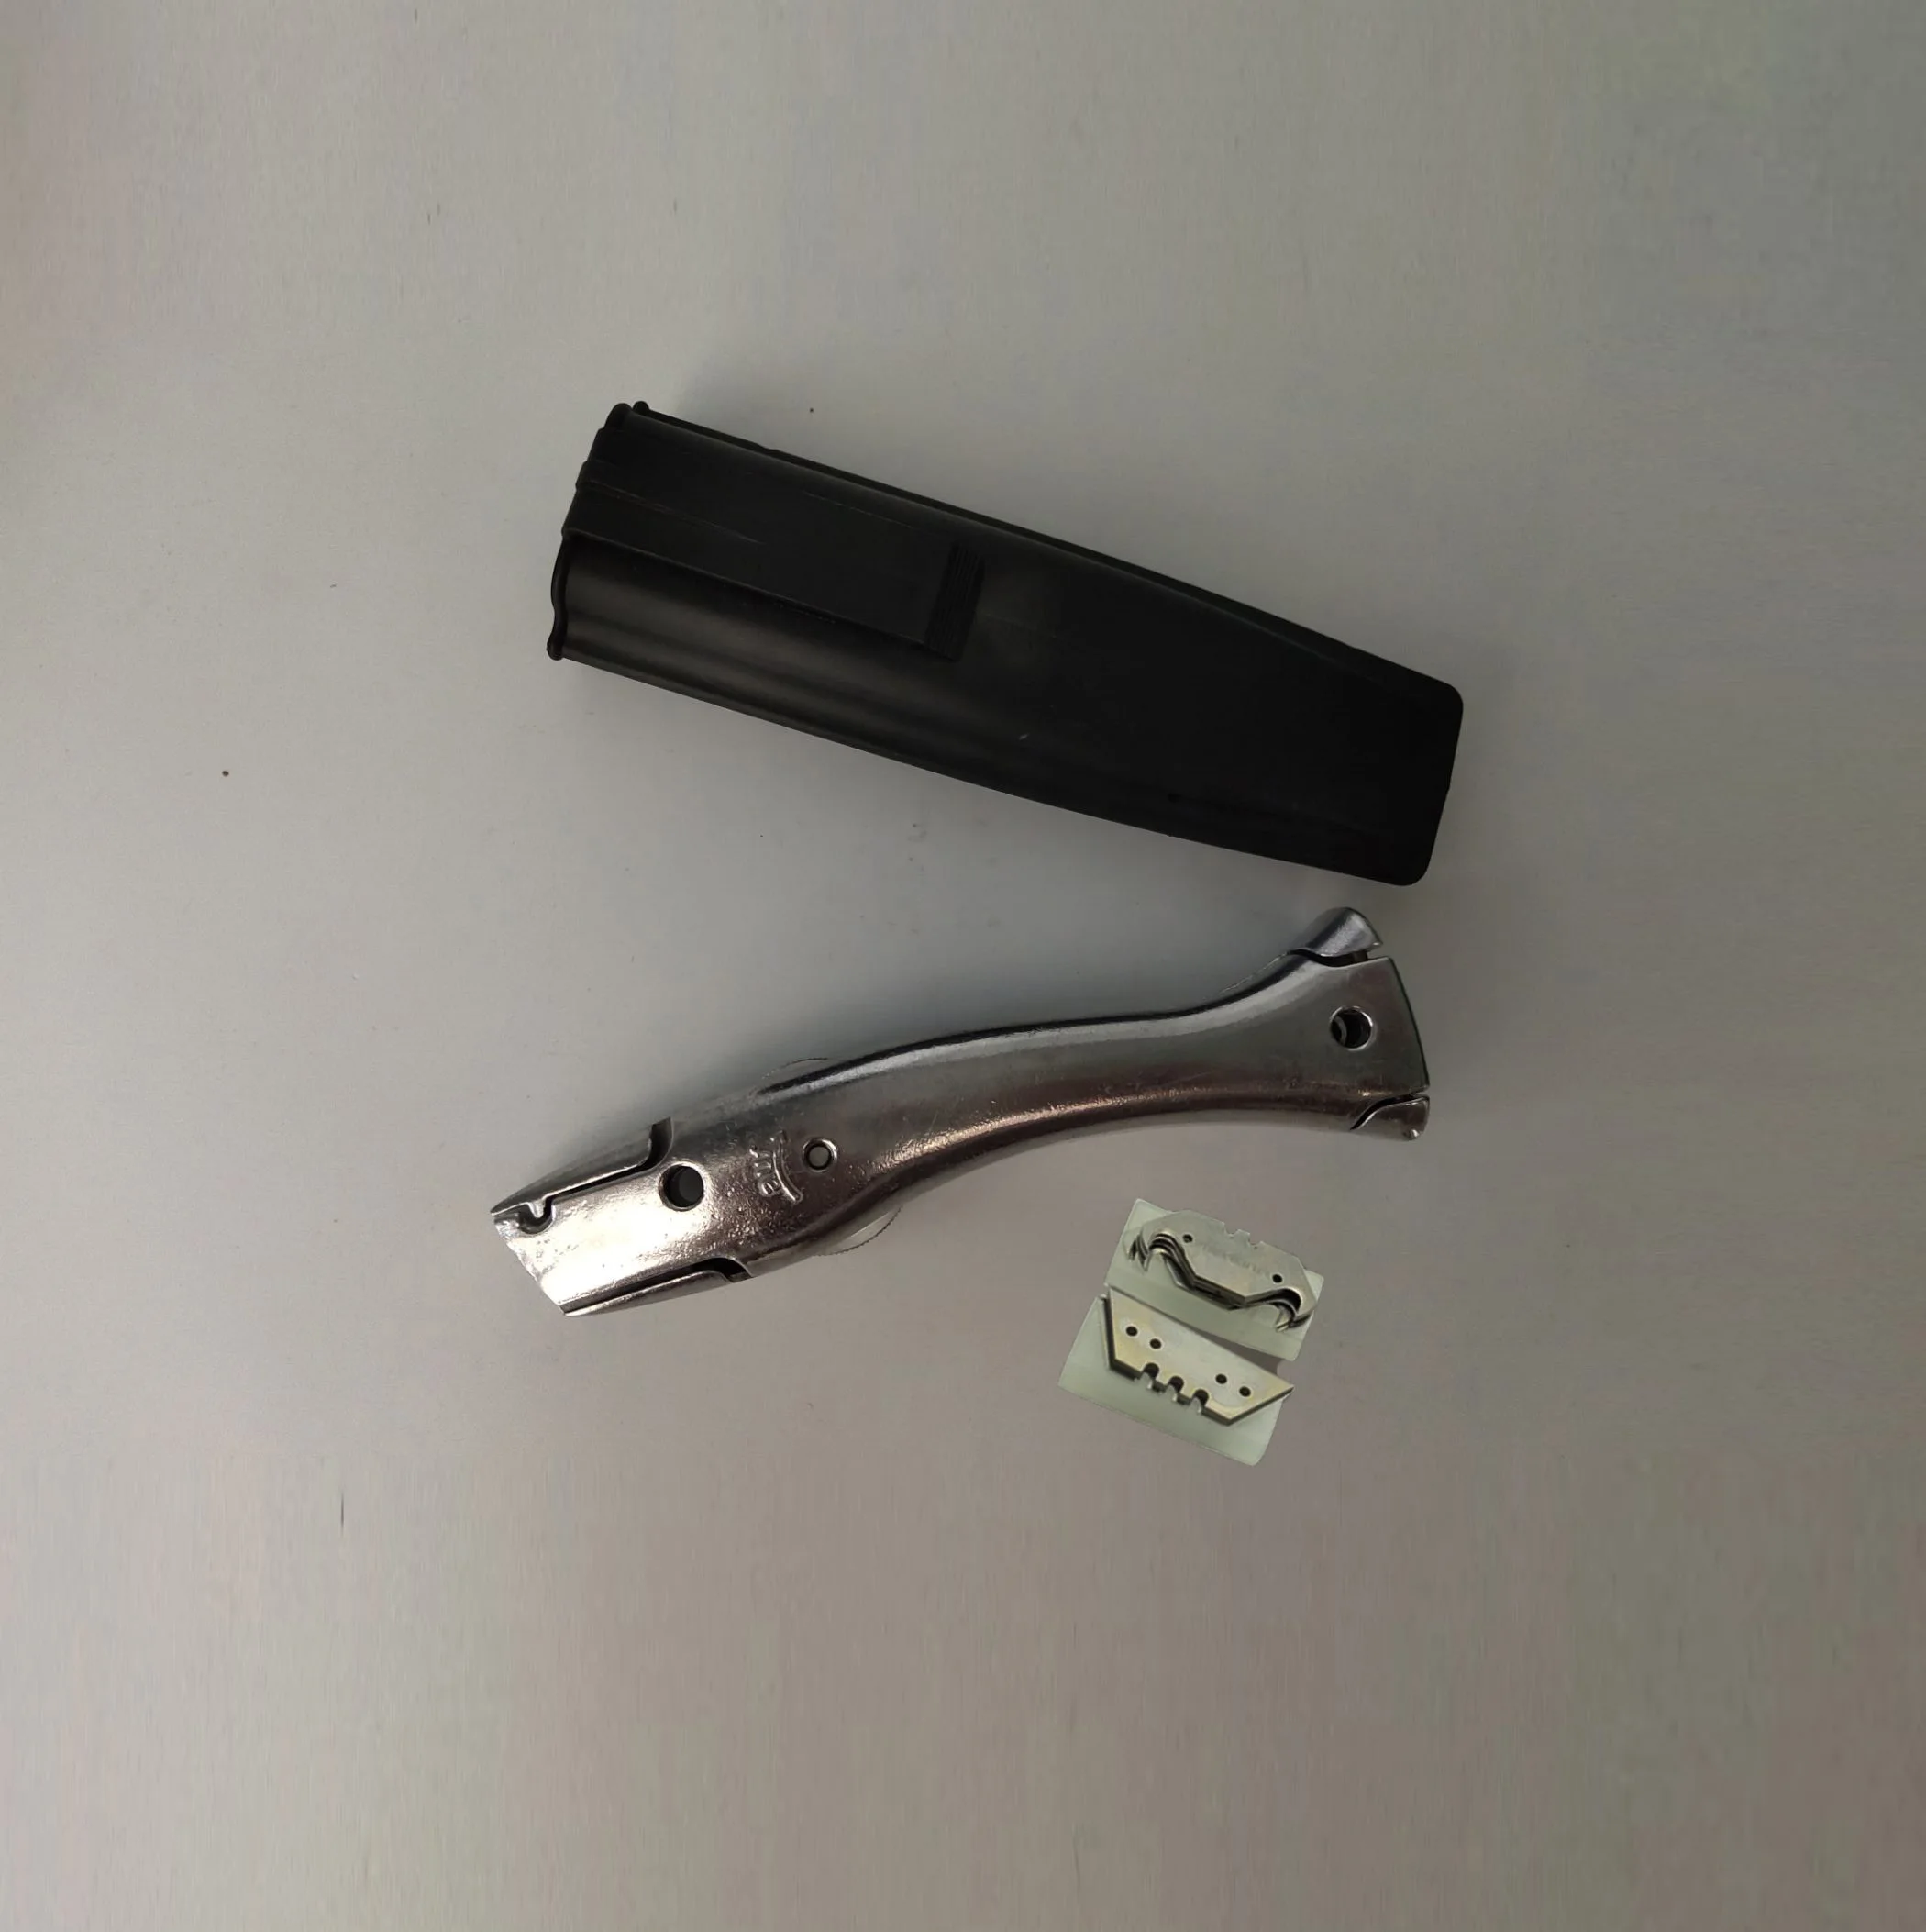 Многократный нарезной станок с ножом Полумесяца и насадкой для сварки ПВХ Виниловый напольный набор для сварки, инструменты для установки полов(9 предметов